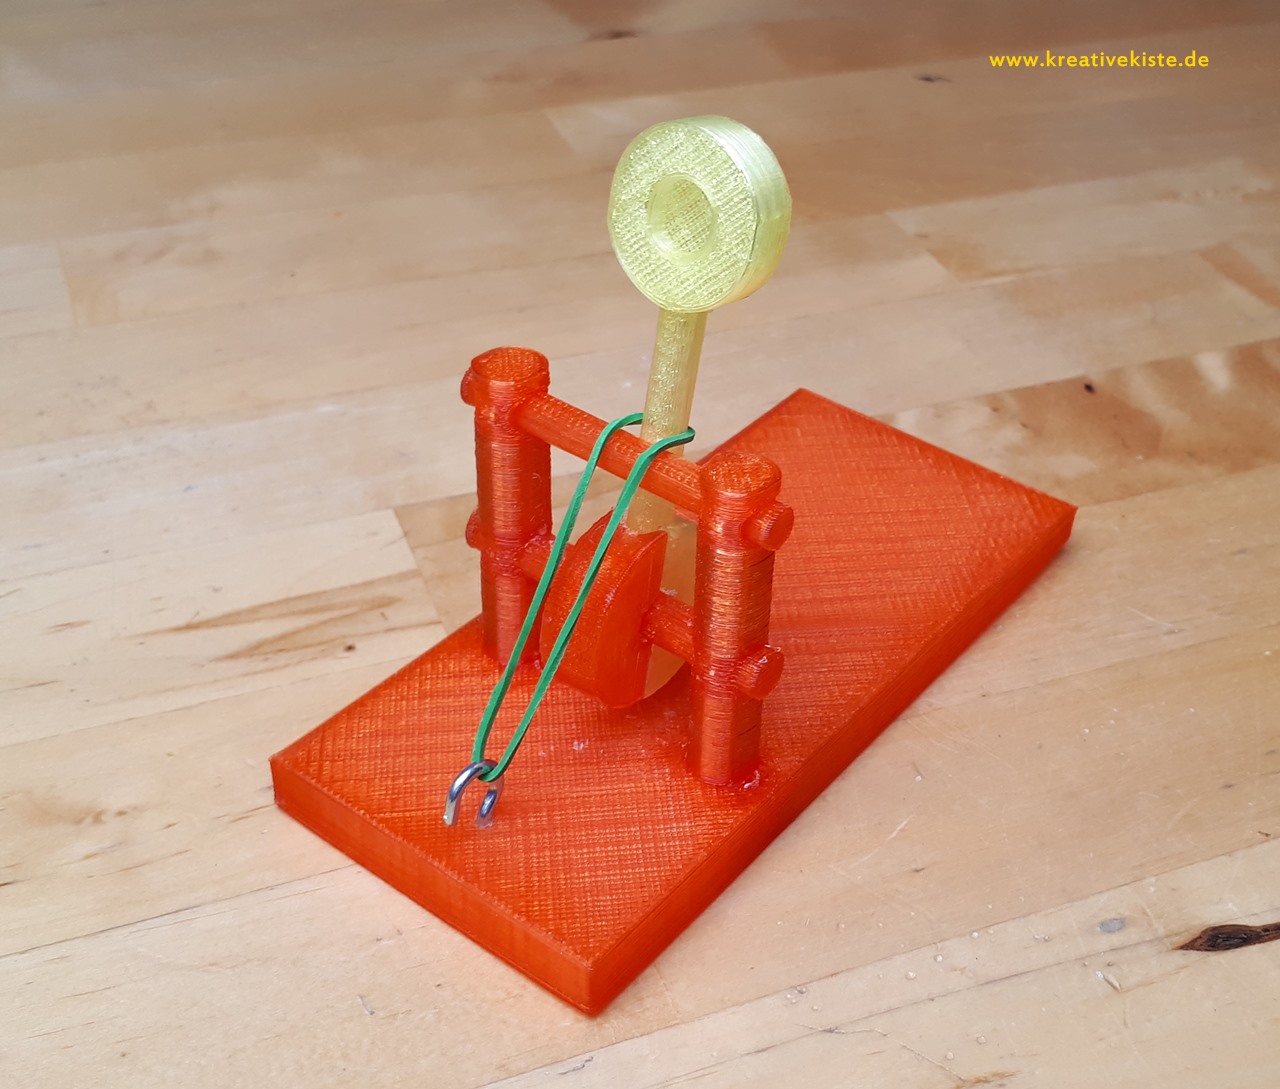 5 3D drucker katapult mit gummis bauen